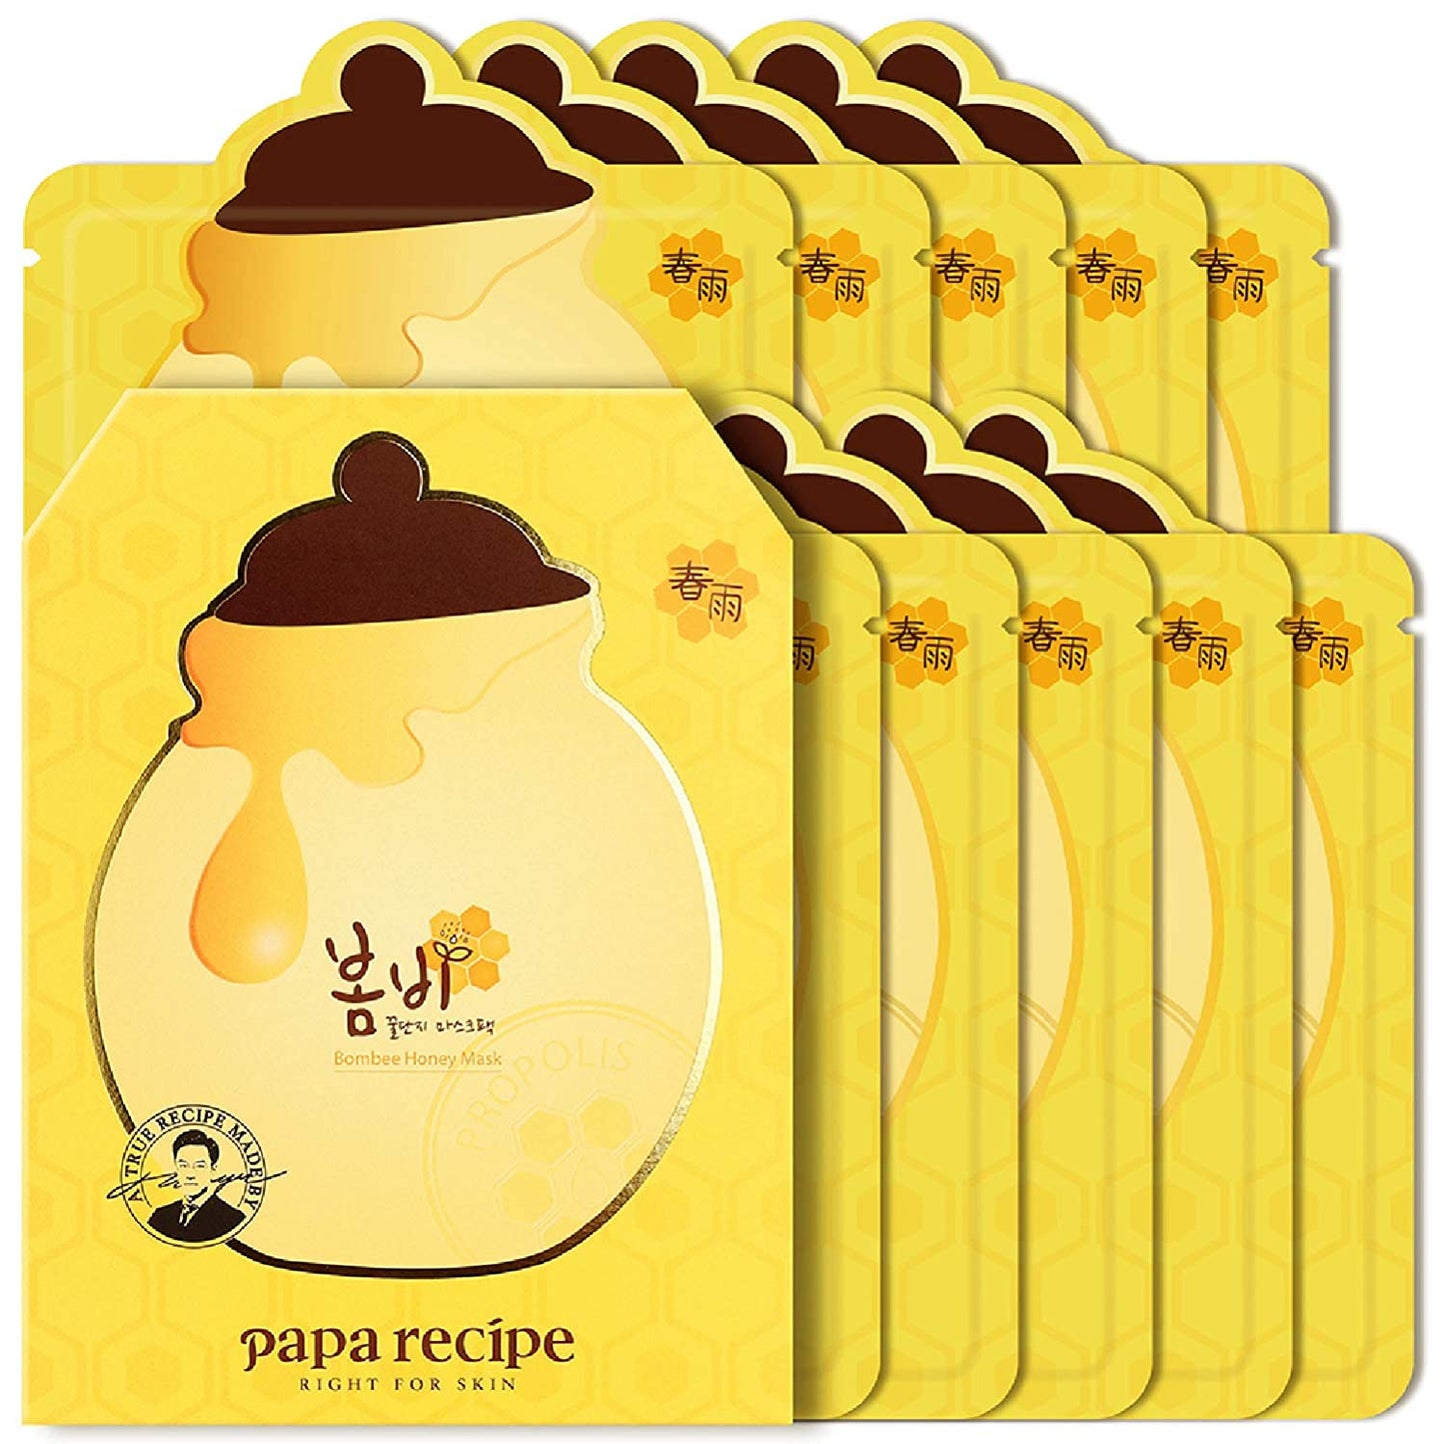 PAPA RECIPE Bombee Honey Mask Sheet 10pcs